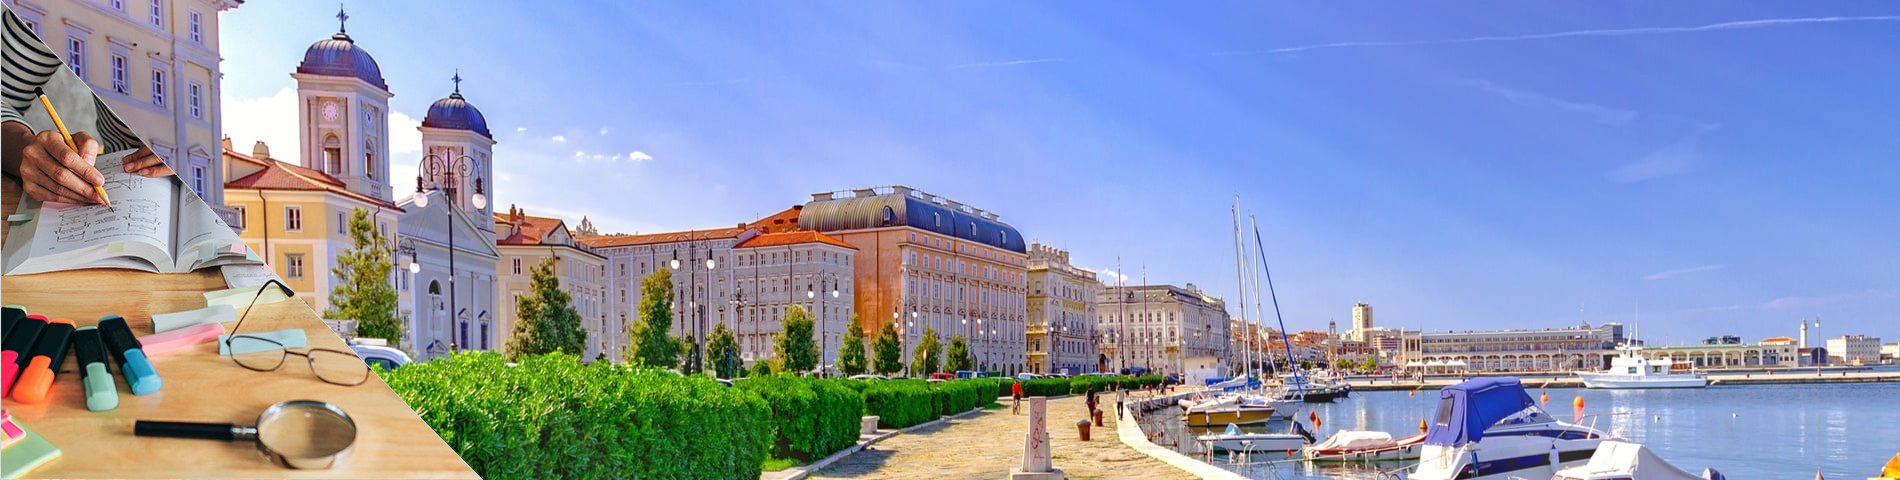 Trieste - Preparazione Universitaria / Pathway